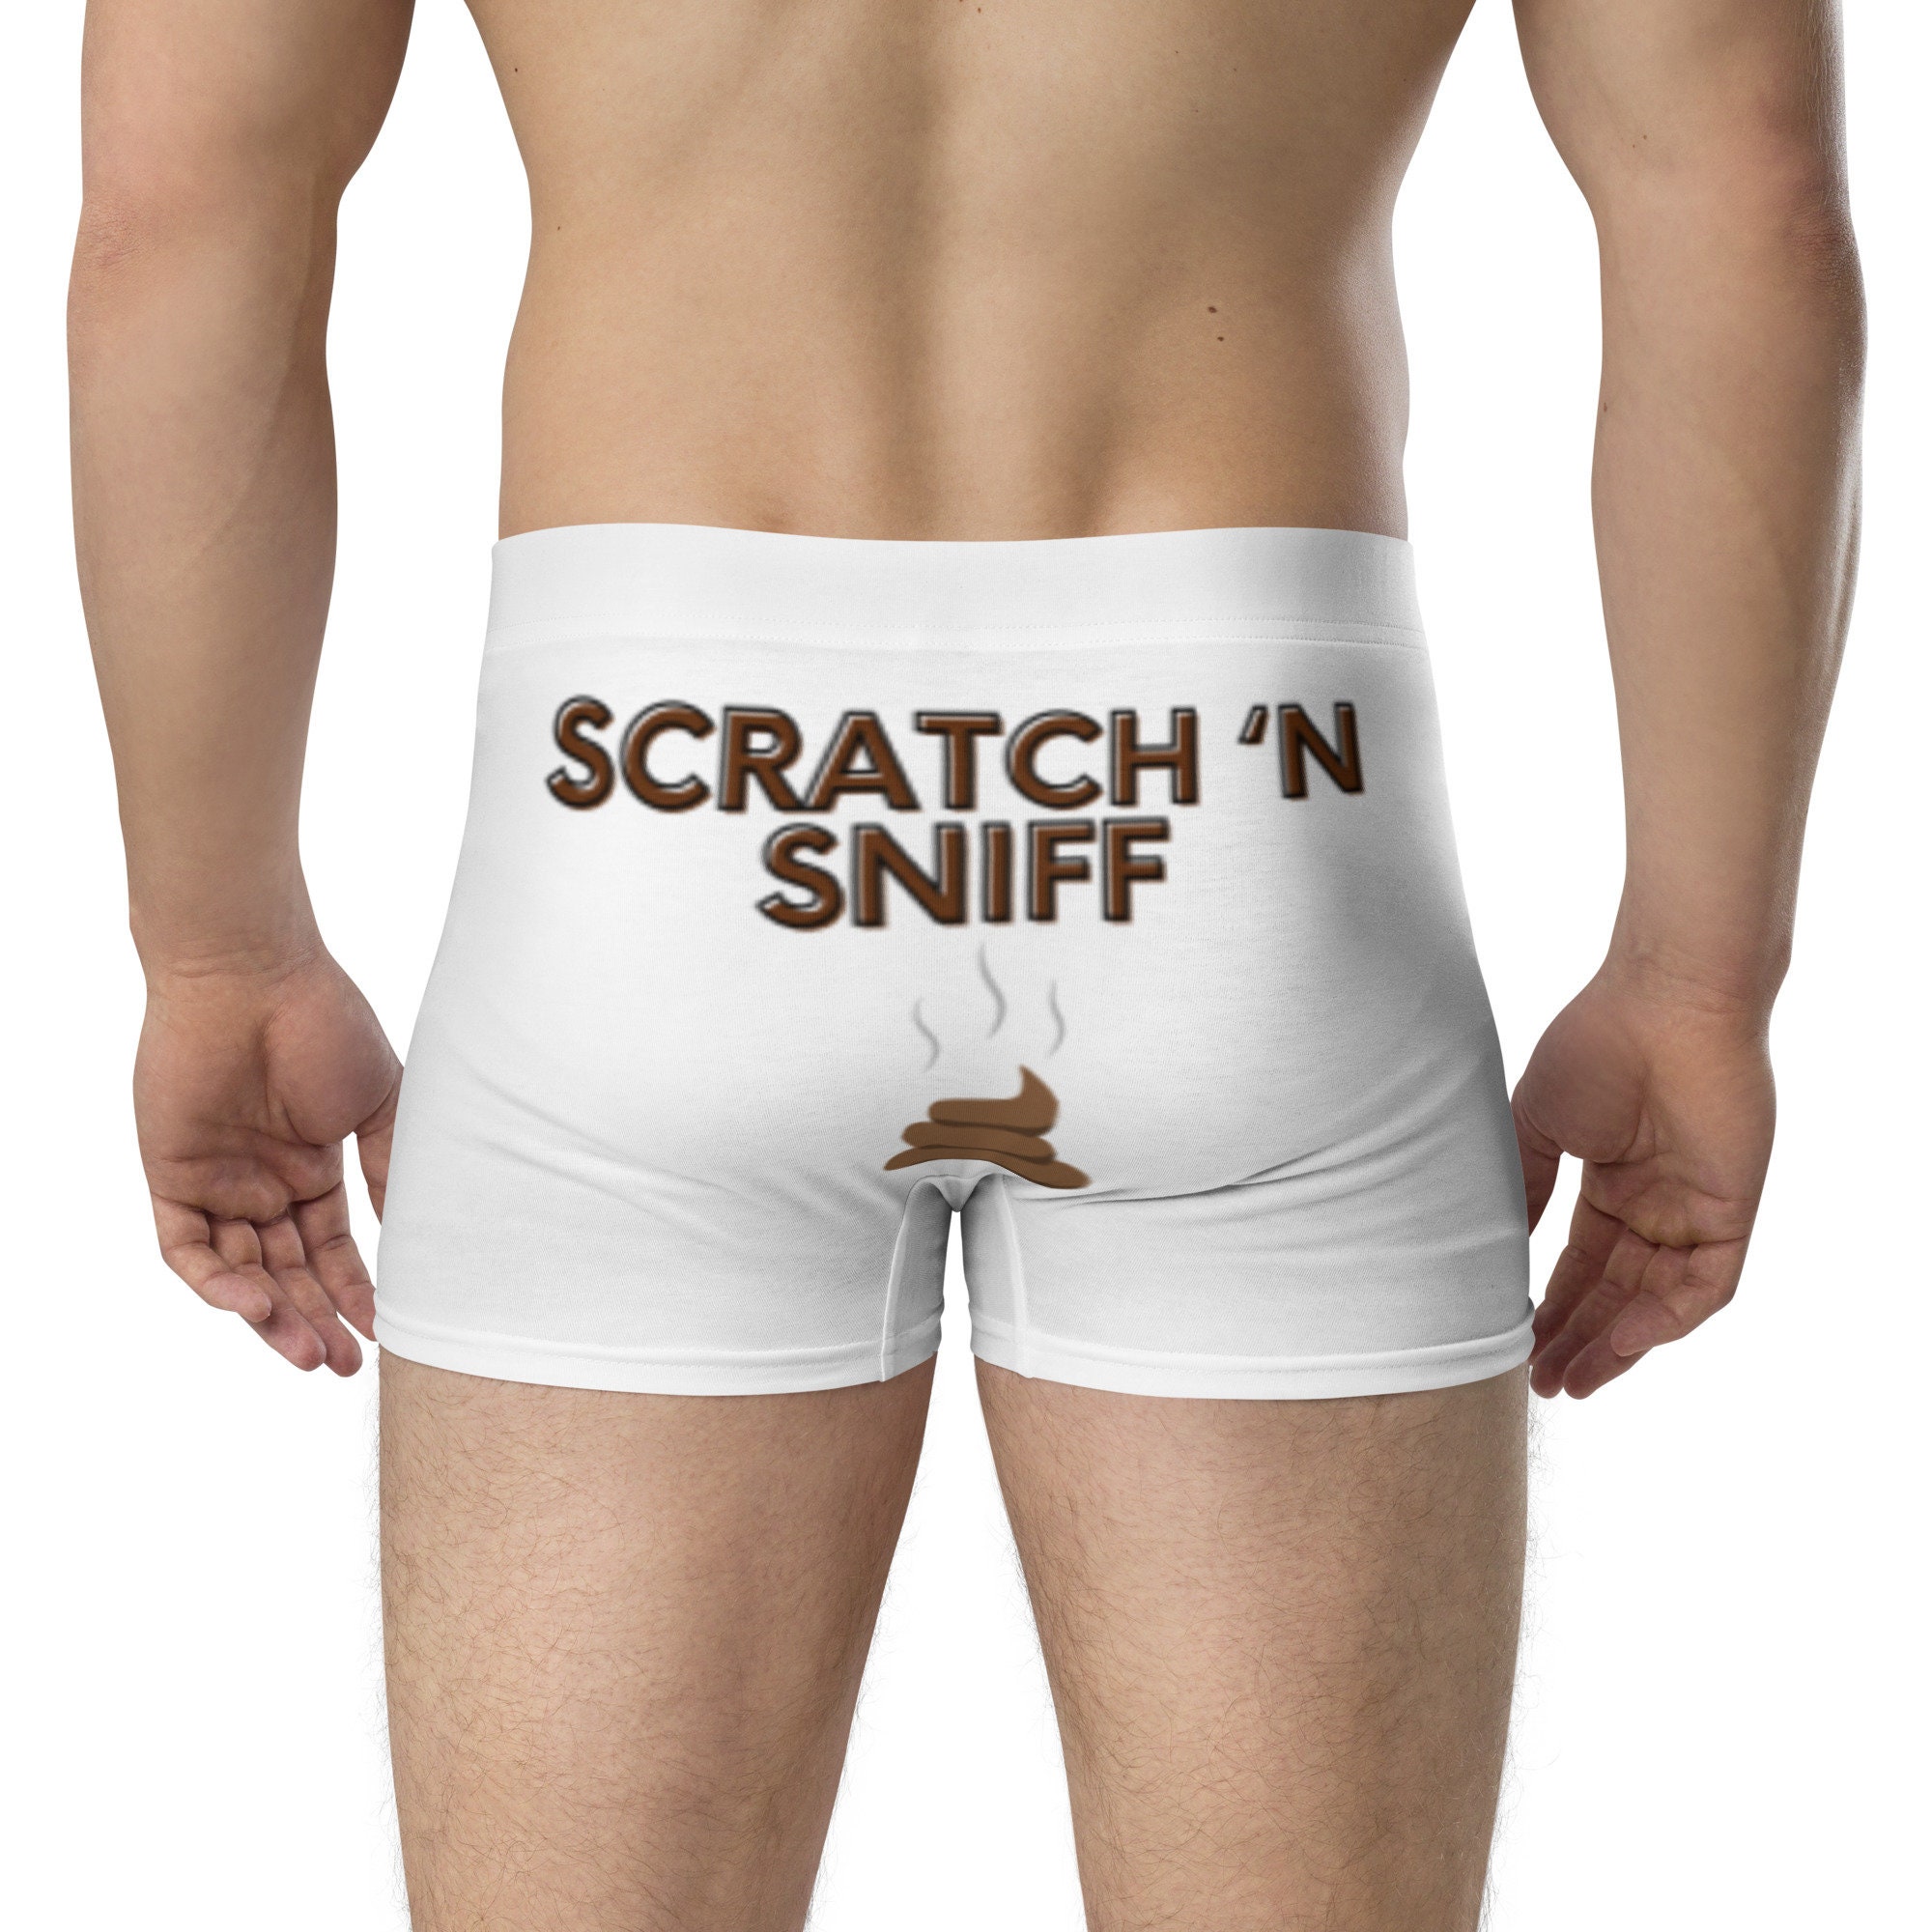 Scratch 'N Sniff Underwear, Funny Men's Underwear, Gift for Him